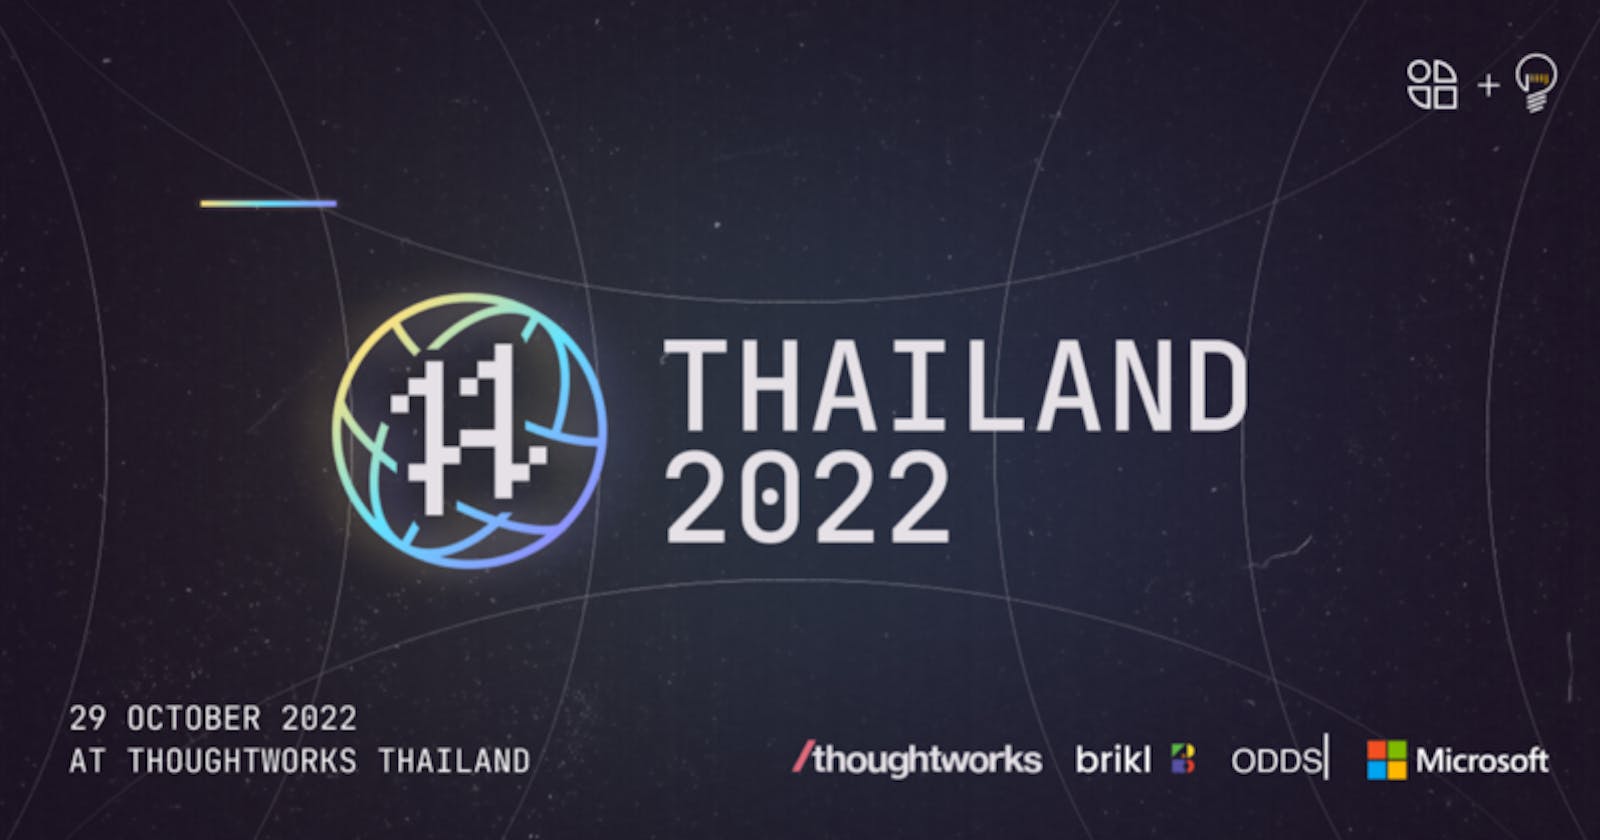 แหกแล้วได้เสื้อ กับการแชร์ประสบการณ์ Hacktoberfest Thailand 2022